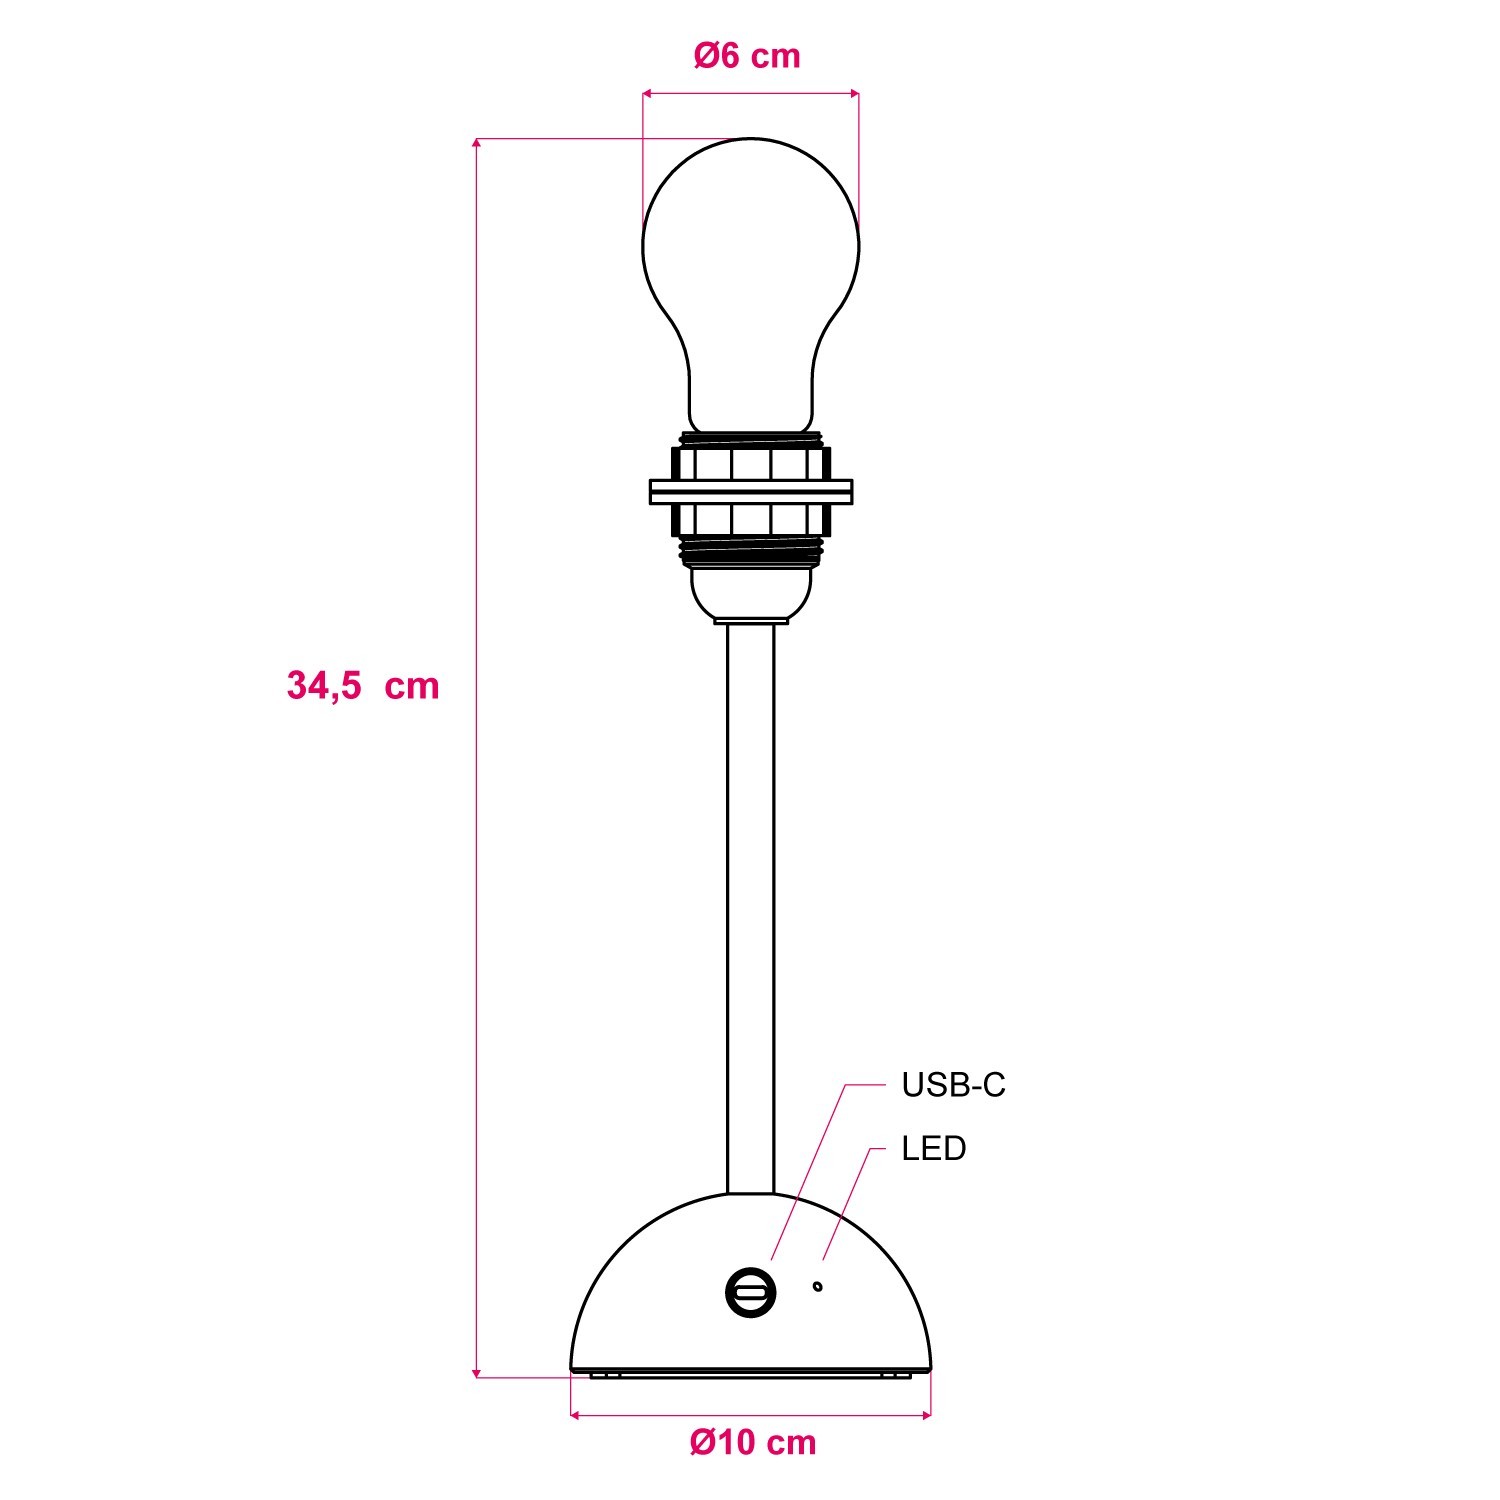 Lampada portatile e ricaricabile Cabless12 con lampadina a goccia e predisposizione per paralume